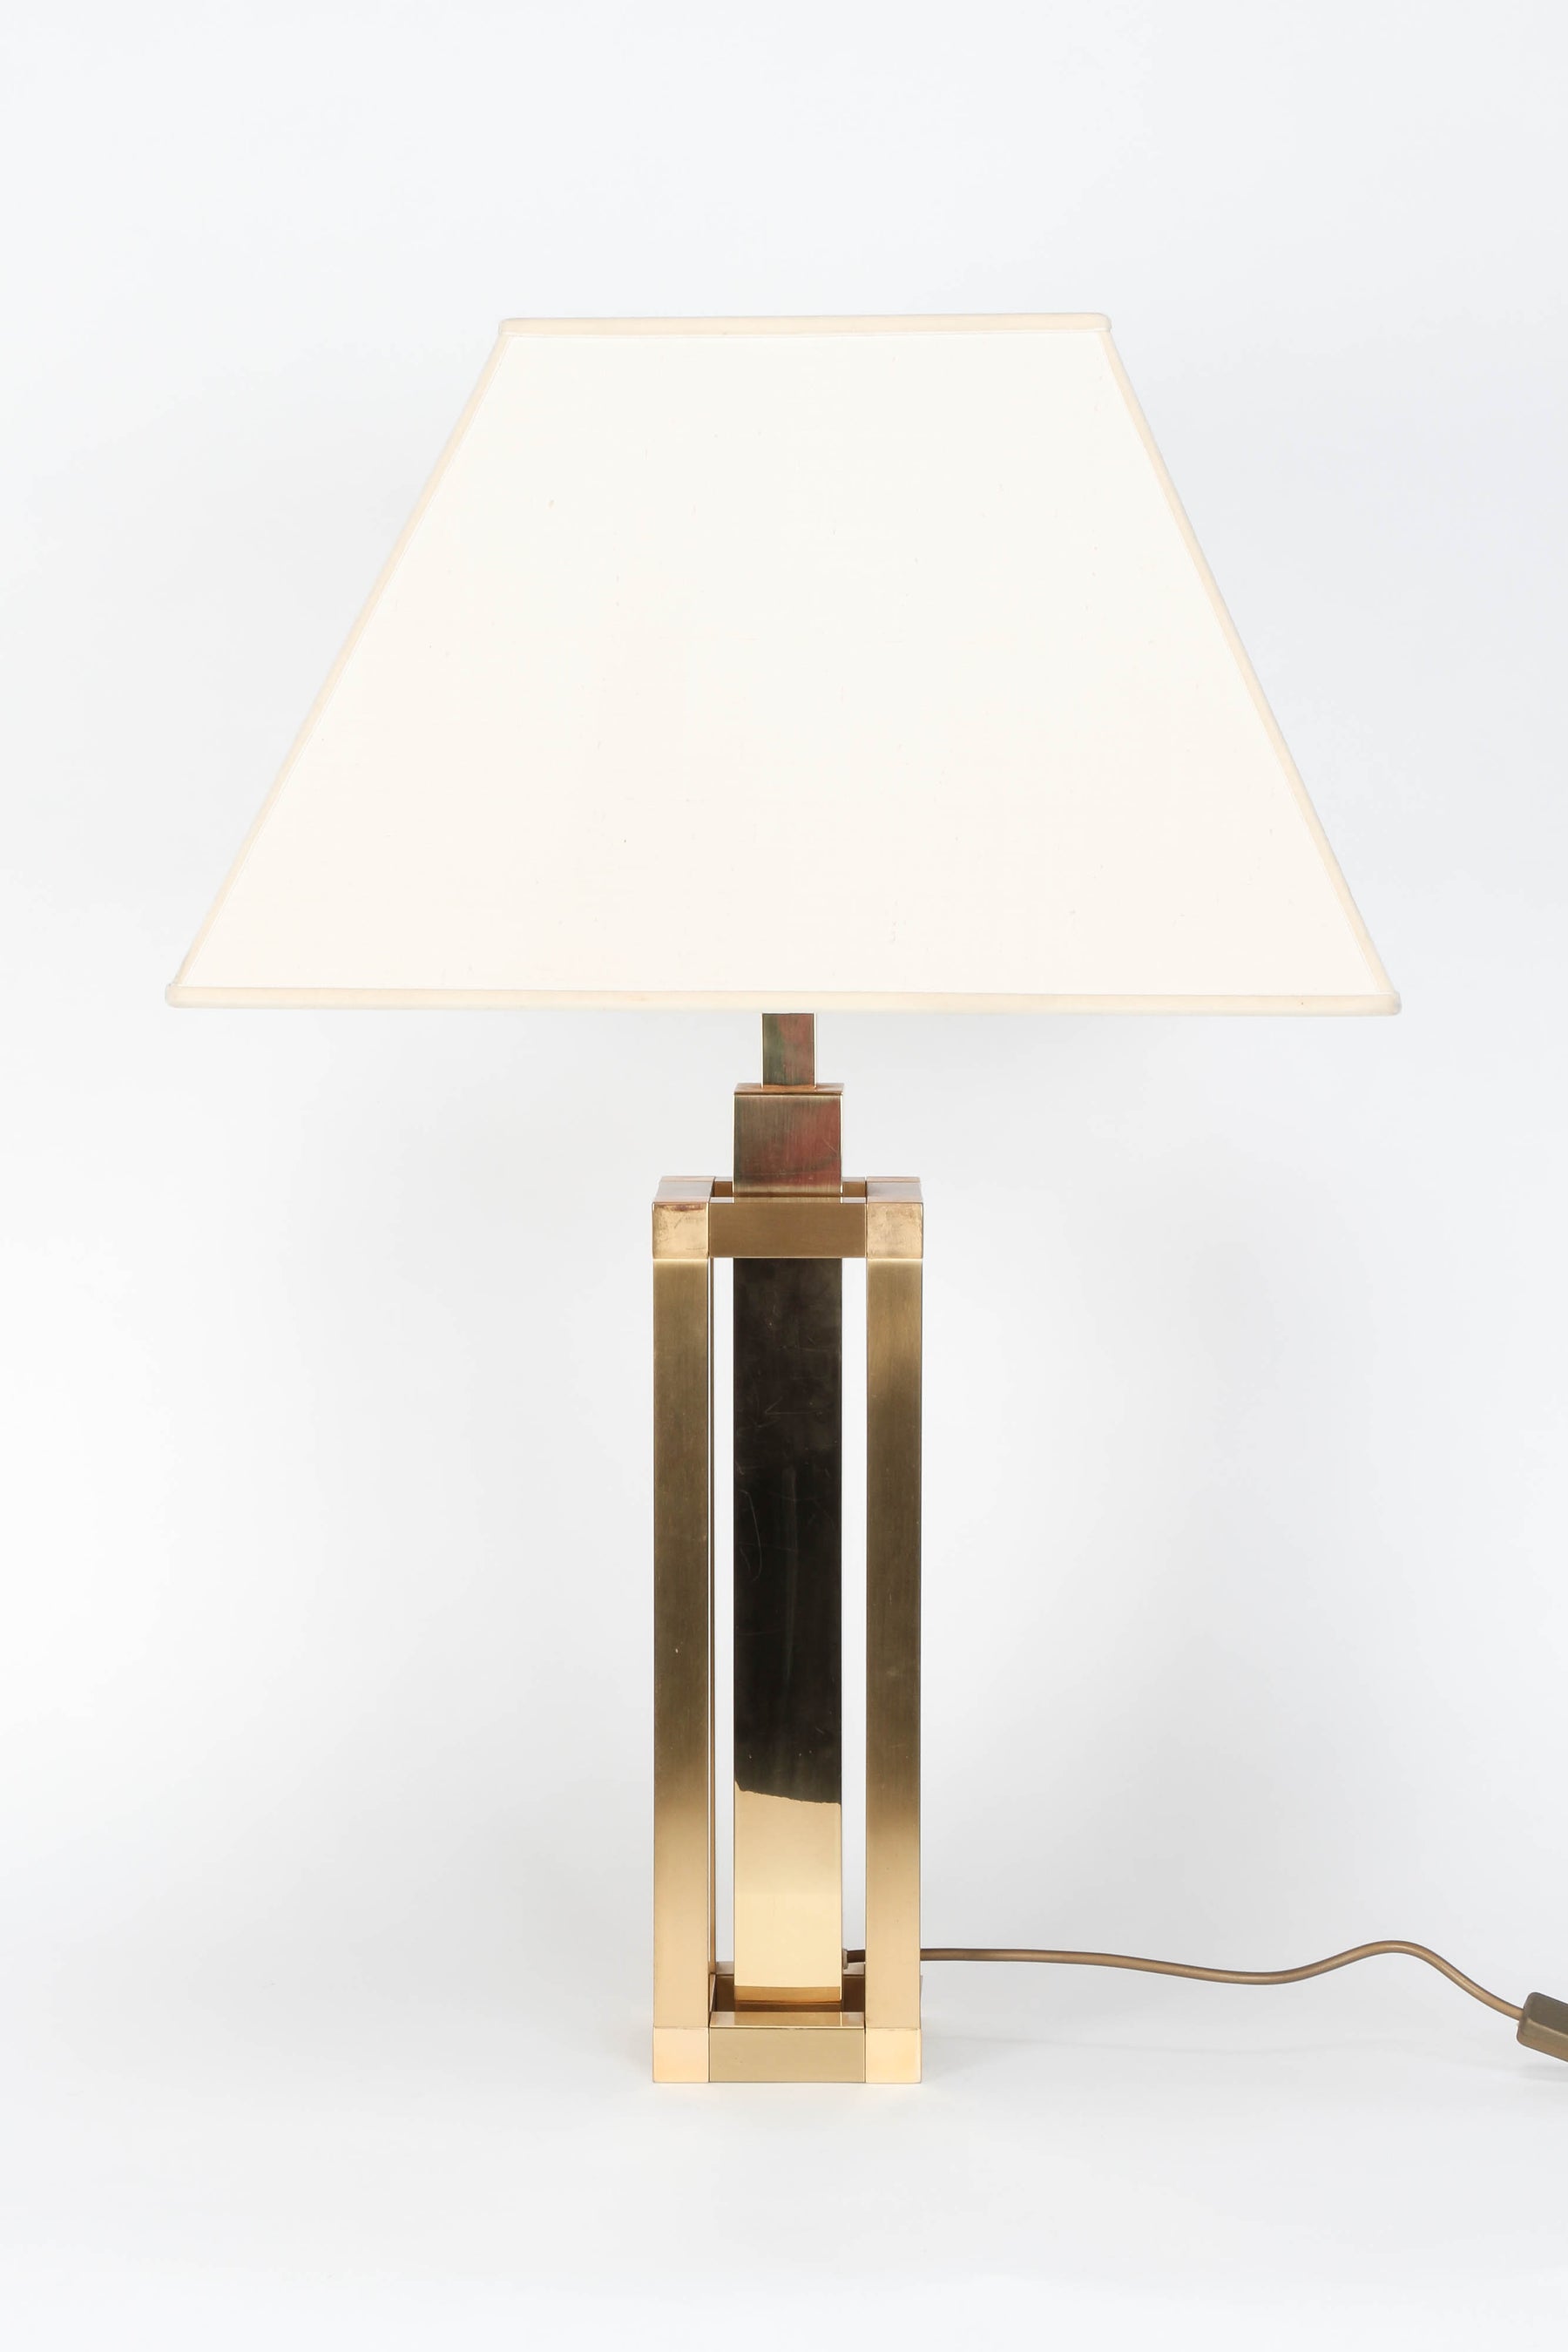 Romeo Rega Table Lamp, Brass, 70s